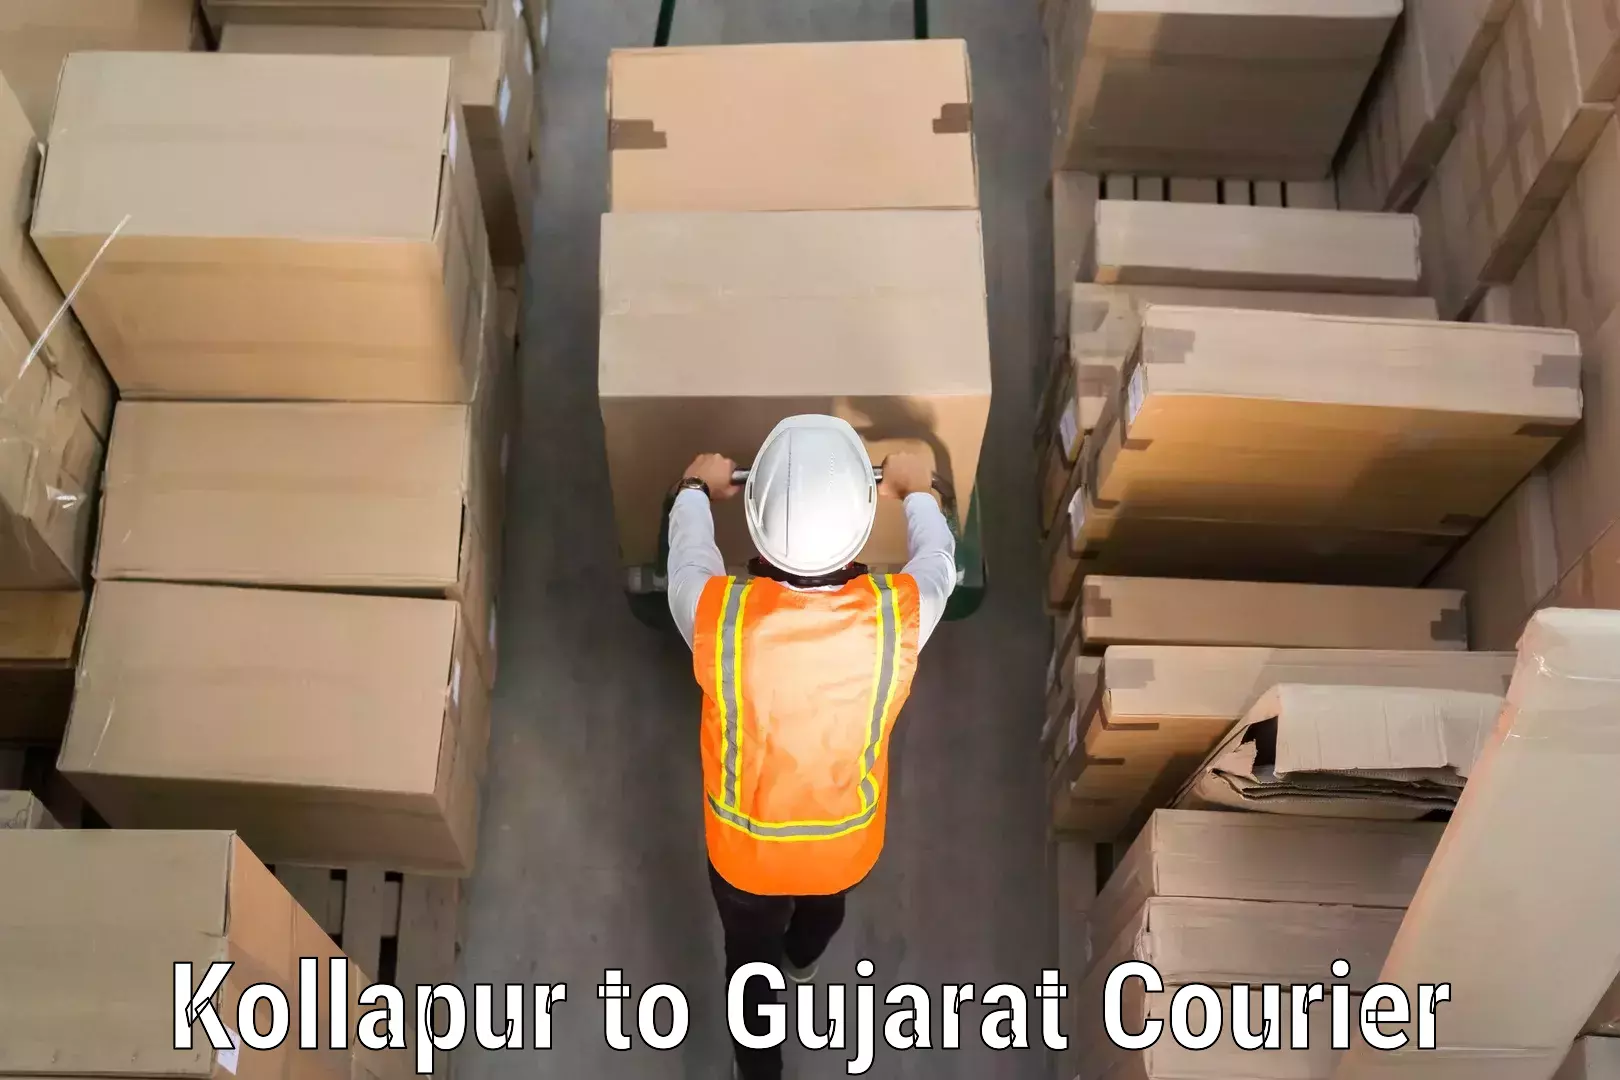 Baggage transport scheduler Kollapur to Gujarat